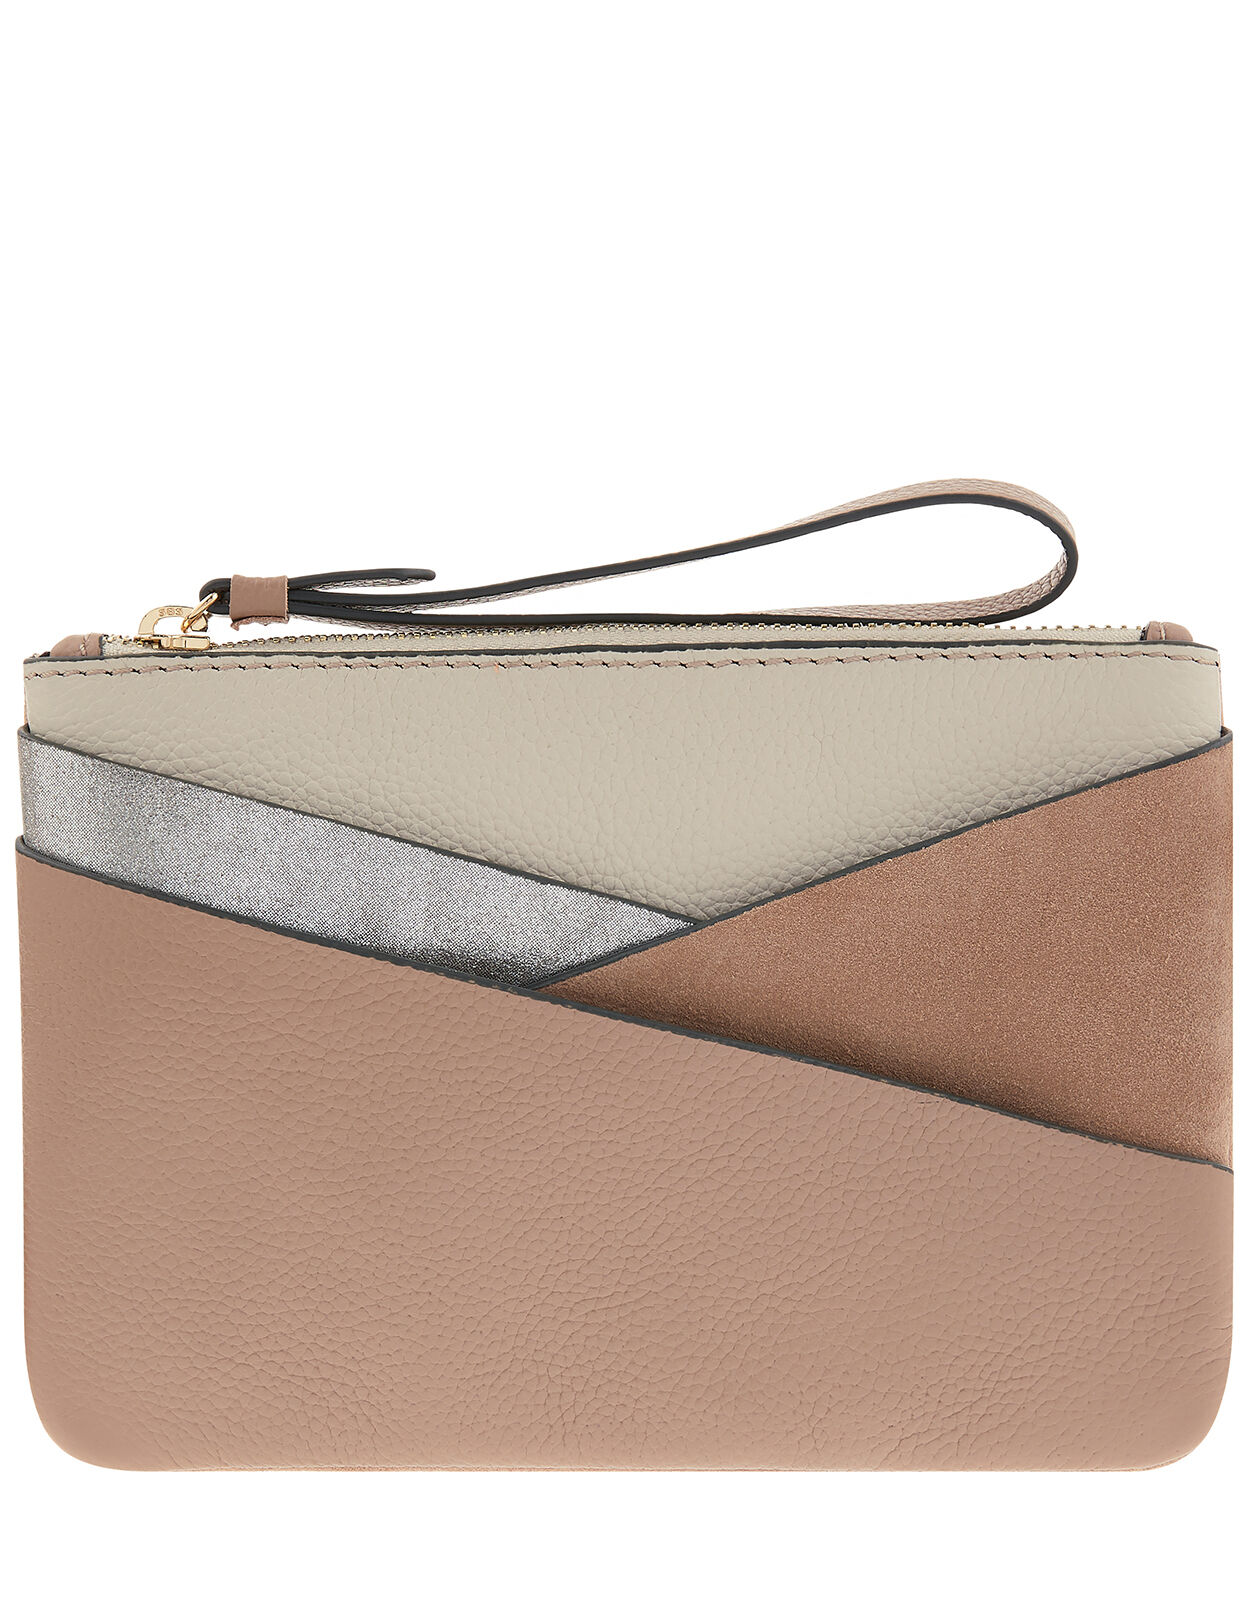 accessorize leather purse